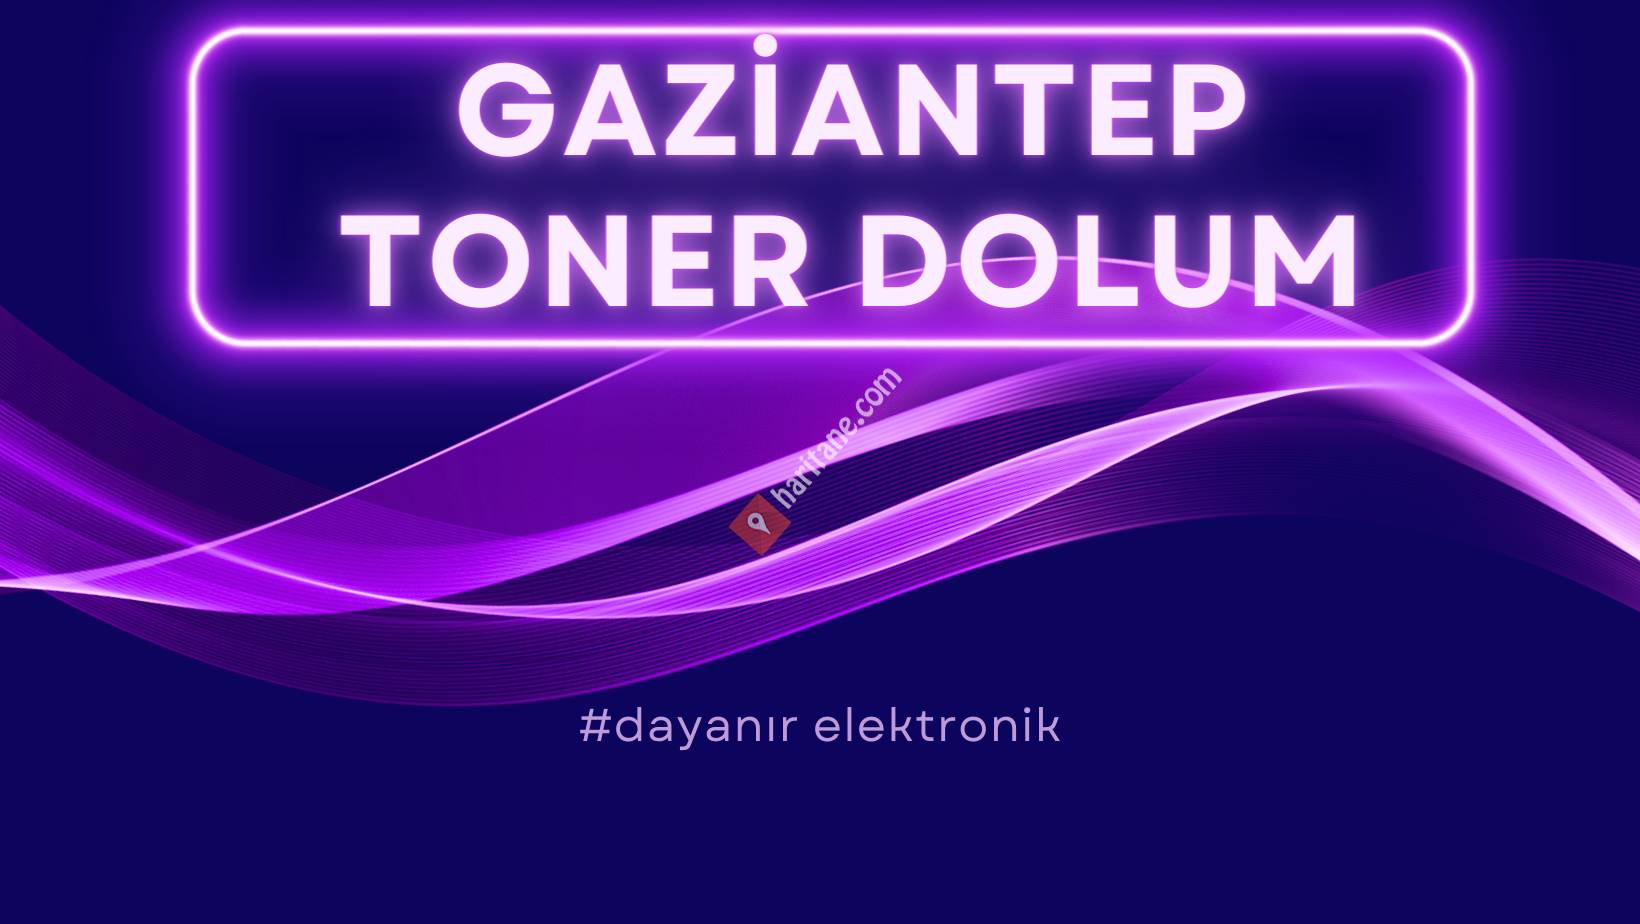 Gaziantep Toner Dolum Dayanır Elektronik